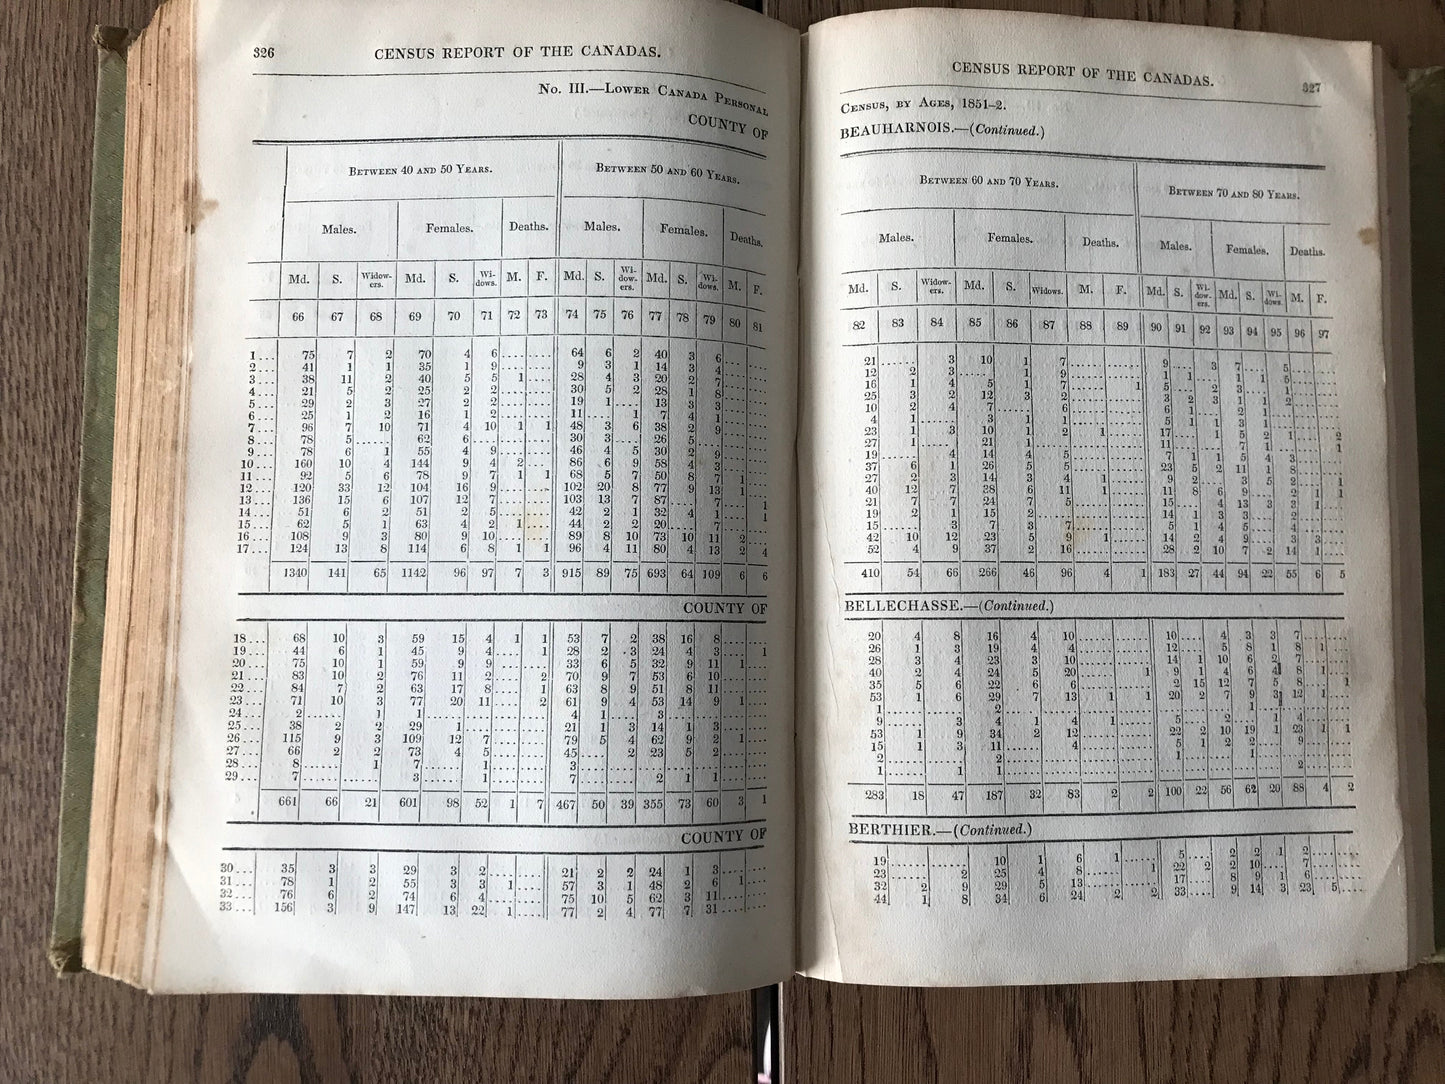 CENSUS OF THE CANADAS 1851-2 - UNATTRIBUTED AUTHOR BooksCardsNBikes